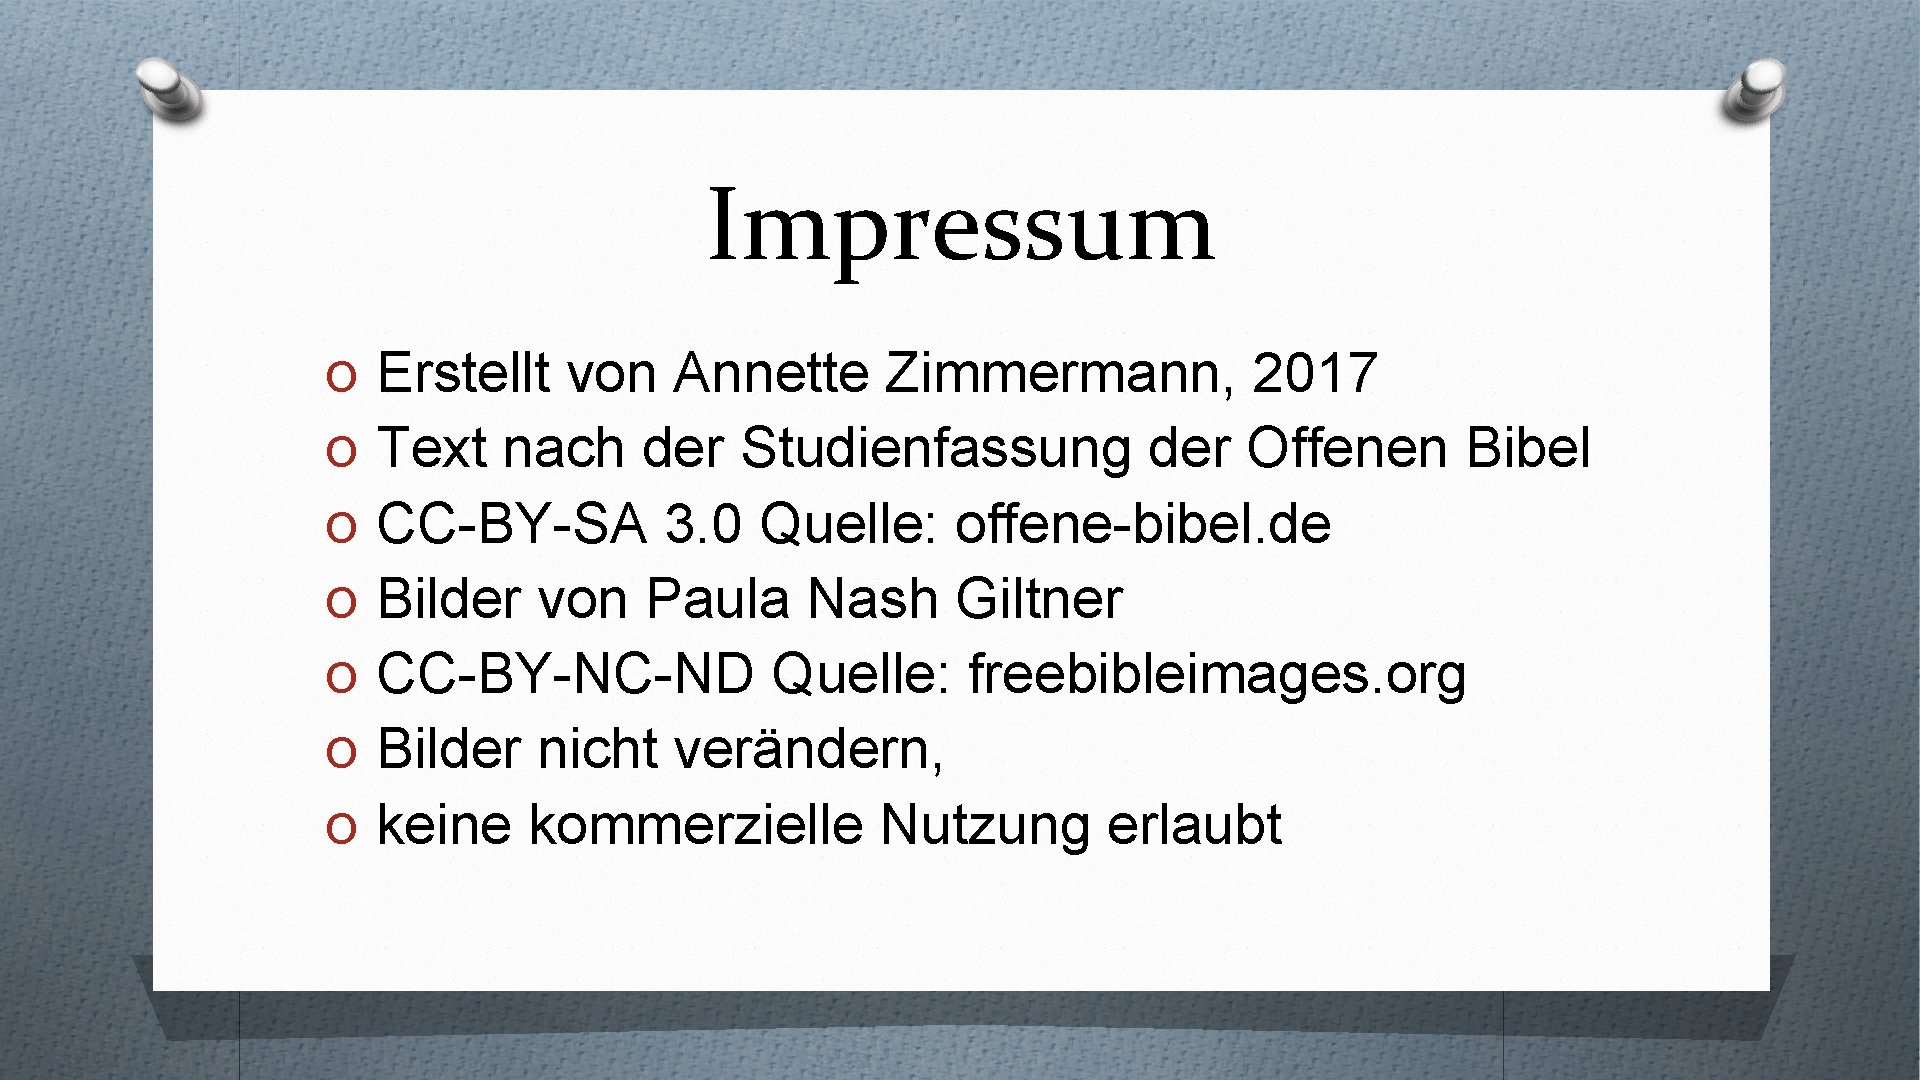 Impressum O Erstellt von Annette Zimmermann, 2017 O Text nach der Studienfassung der Offenen